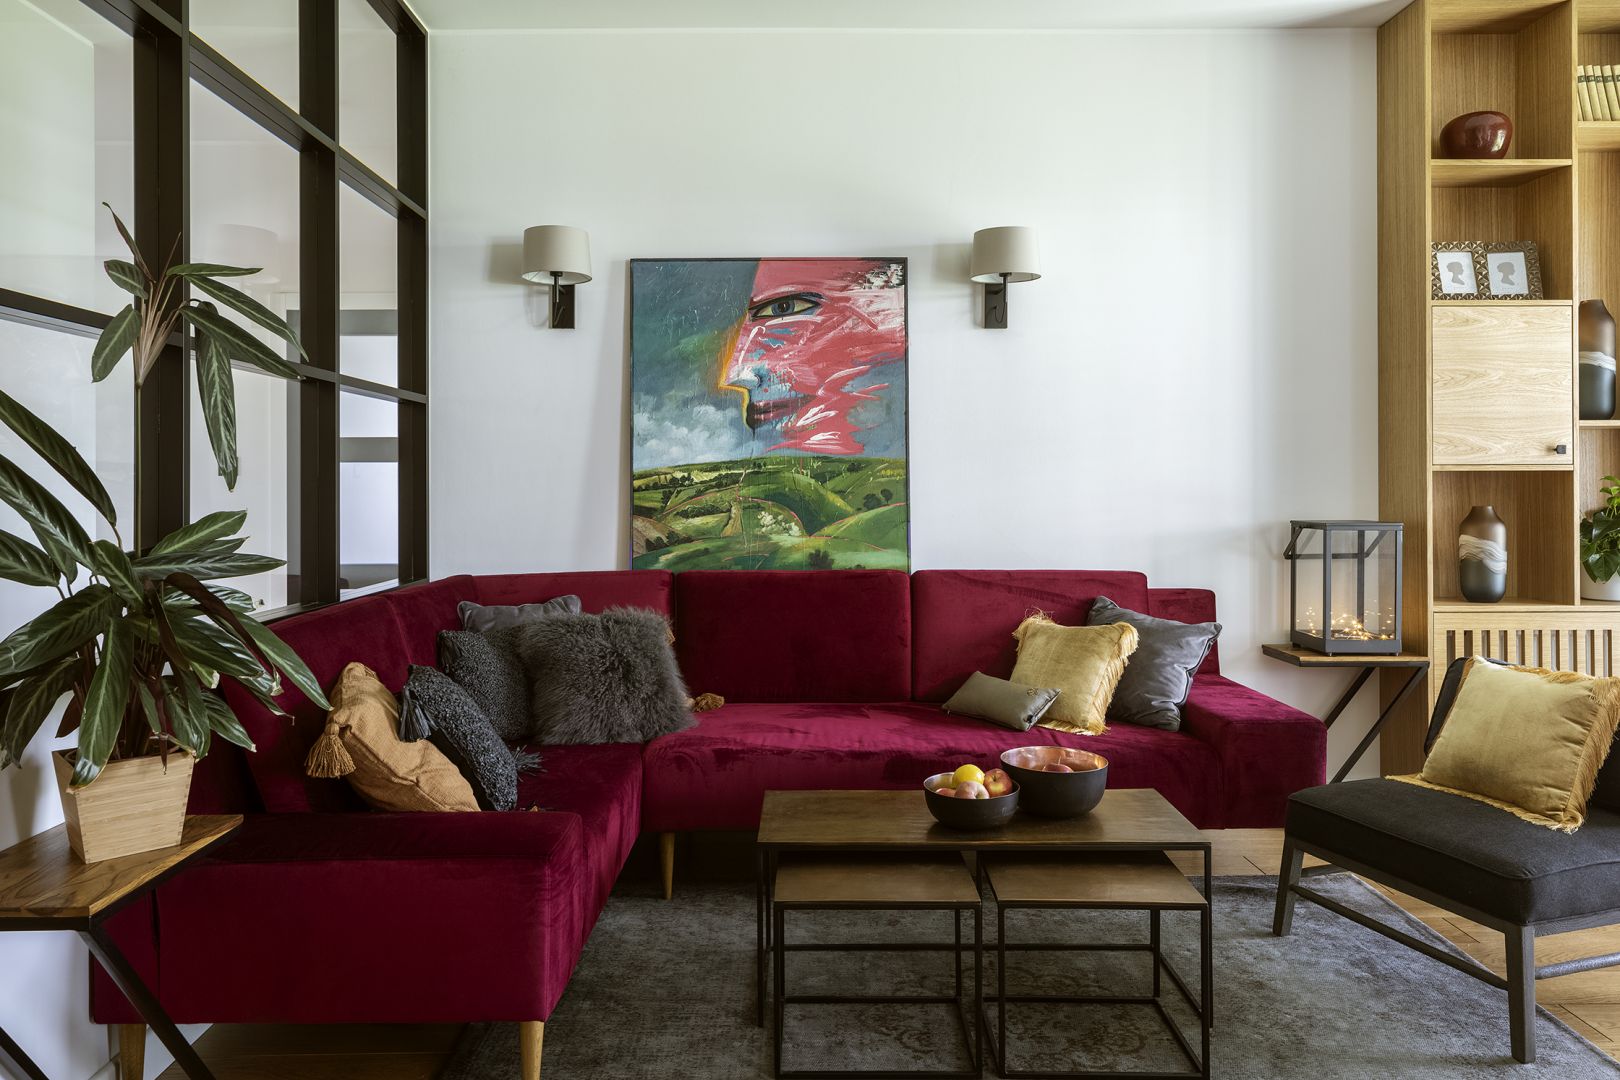 W salonie króluje piękna, bordowa sofa. Projekt wnętrza: Beata Michalak, Studio Deccor. Fot: Yassen Hristov